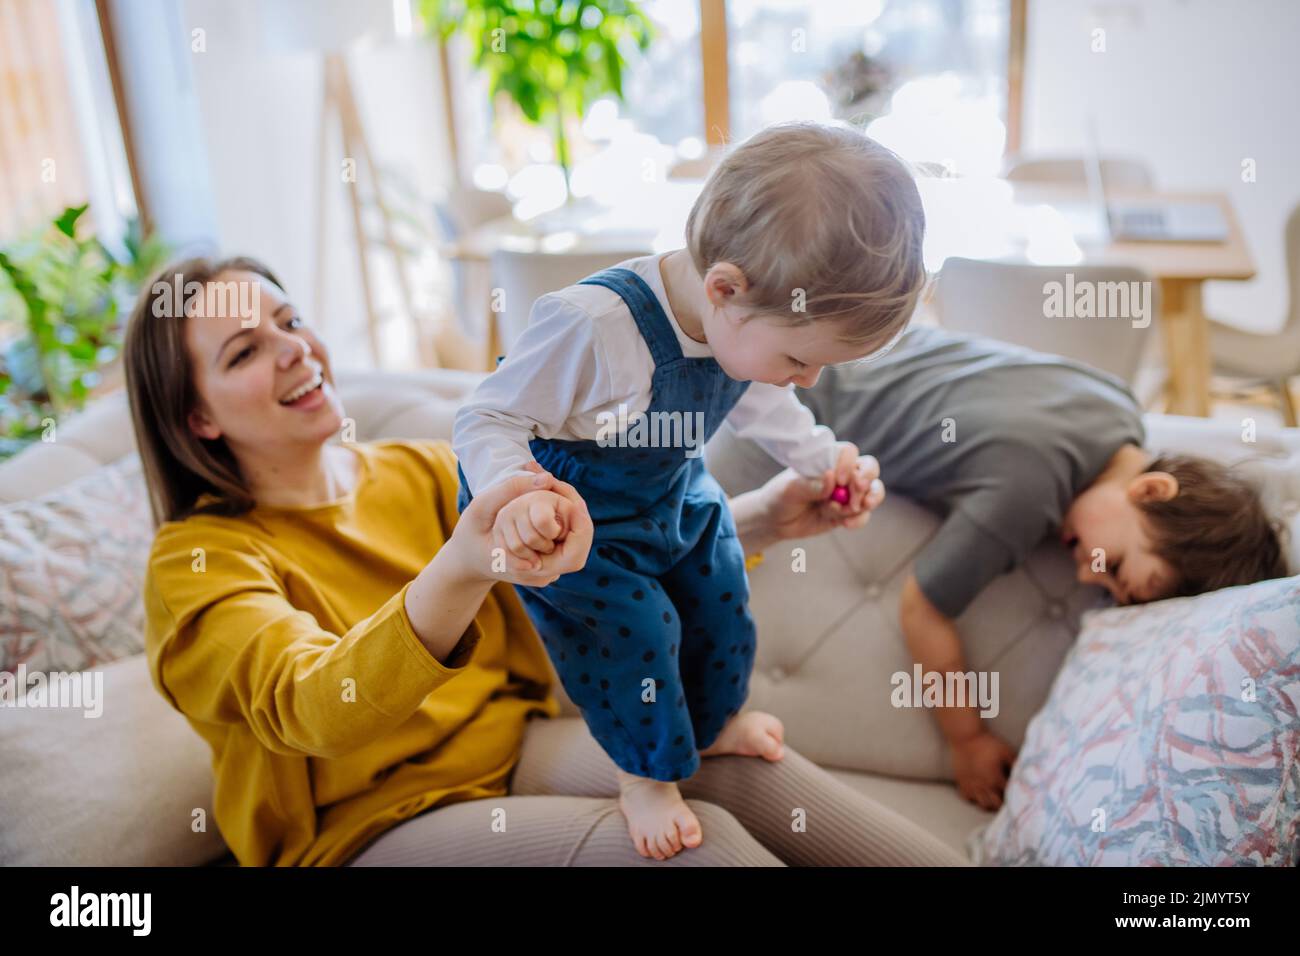 Giovane mamma allegra che gioca con i suoi bambini piccoli e si diverte quando li solleva sul divano. Foto Stock